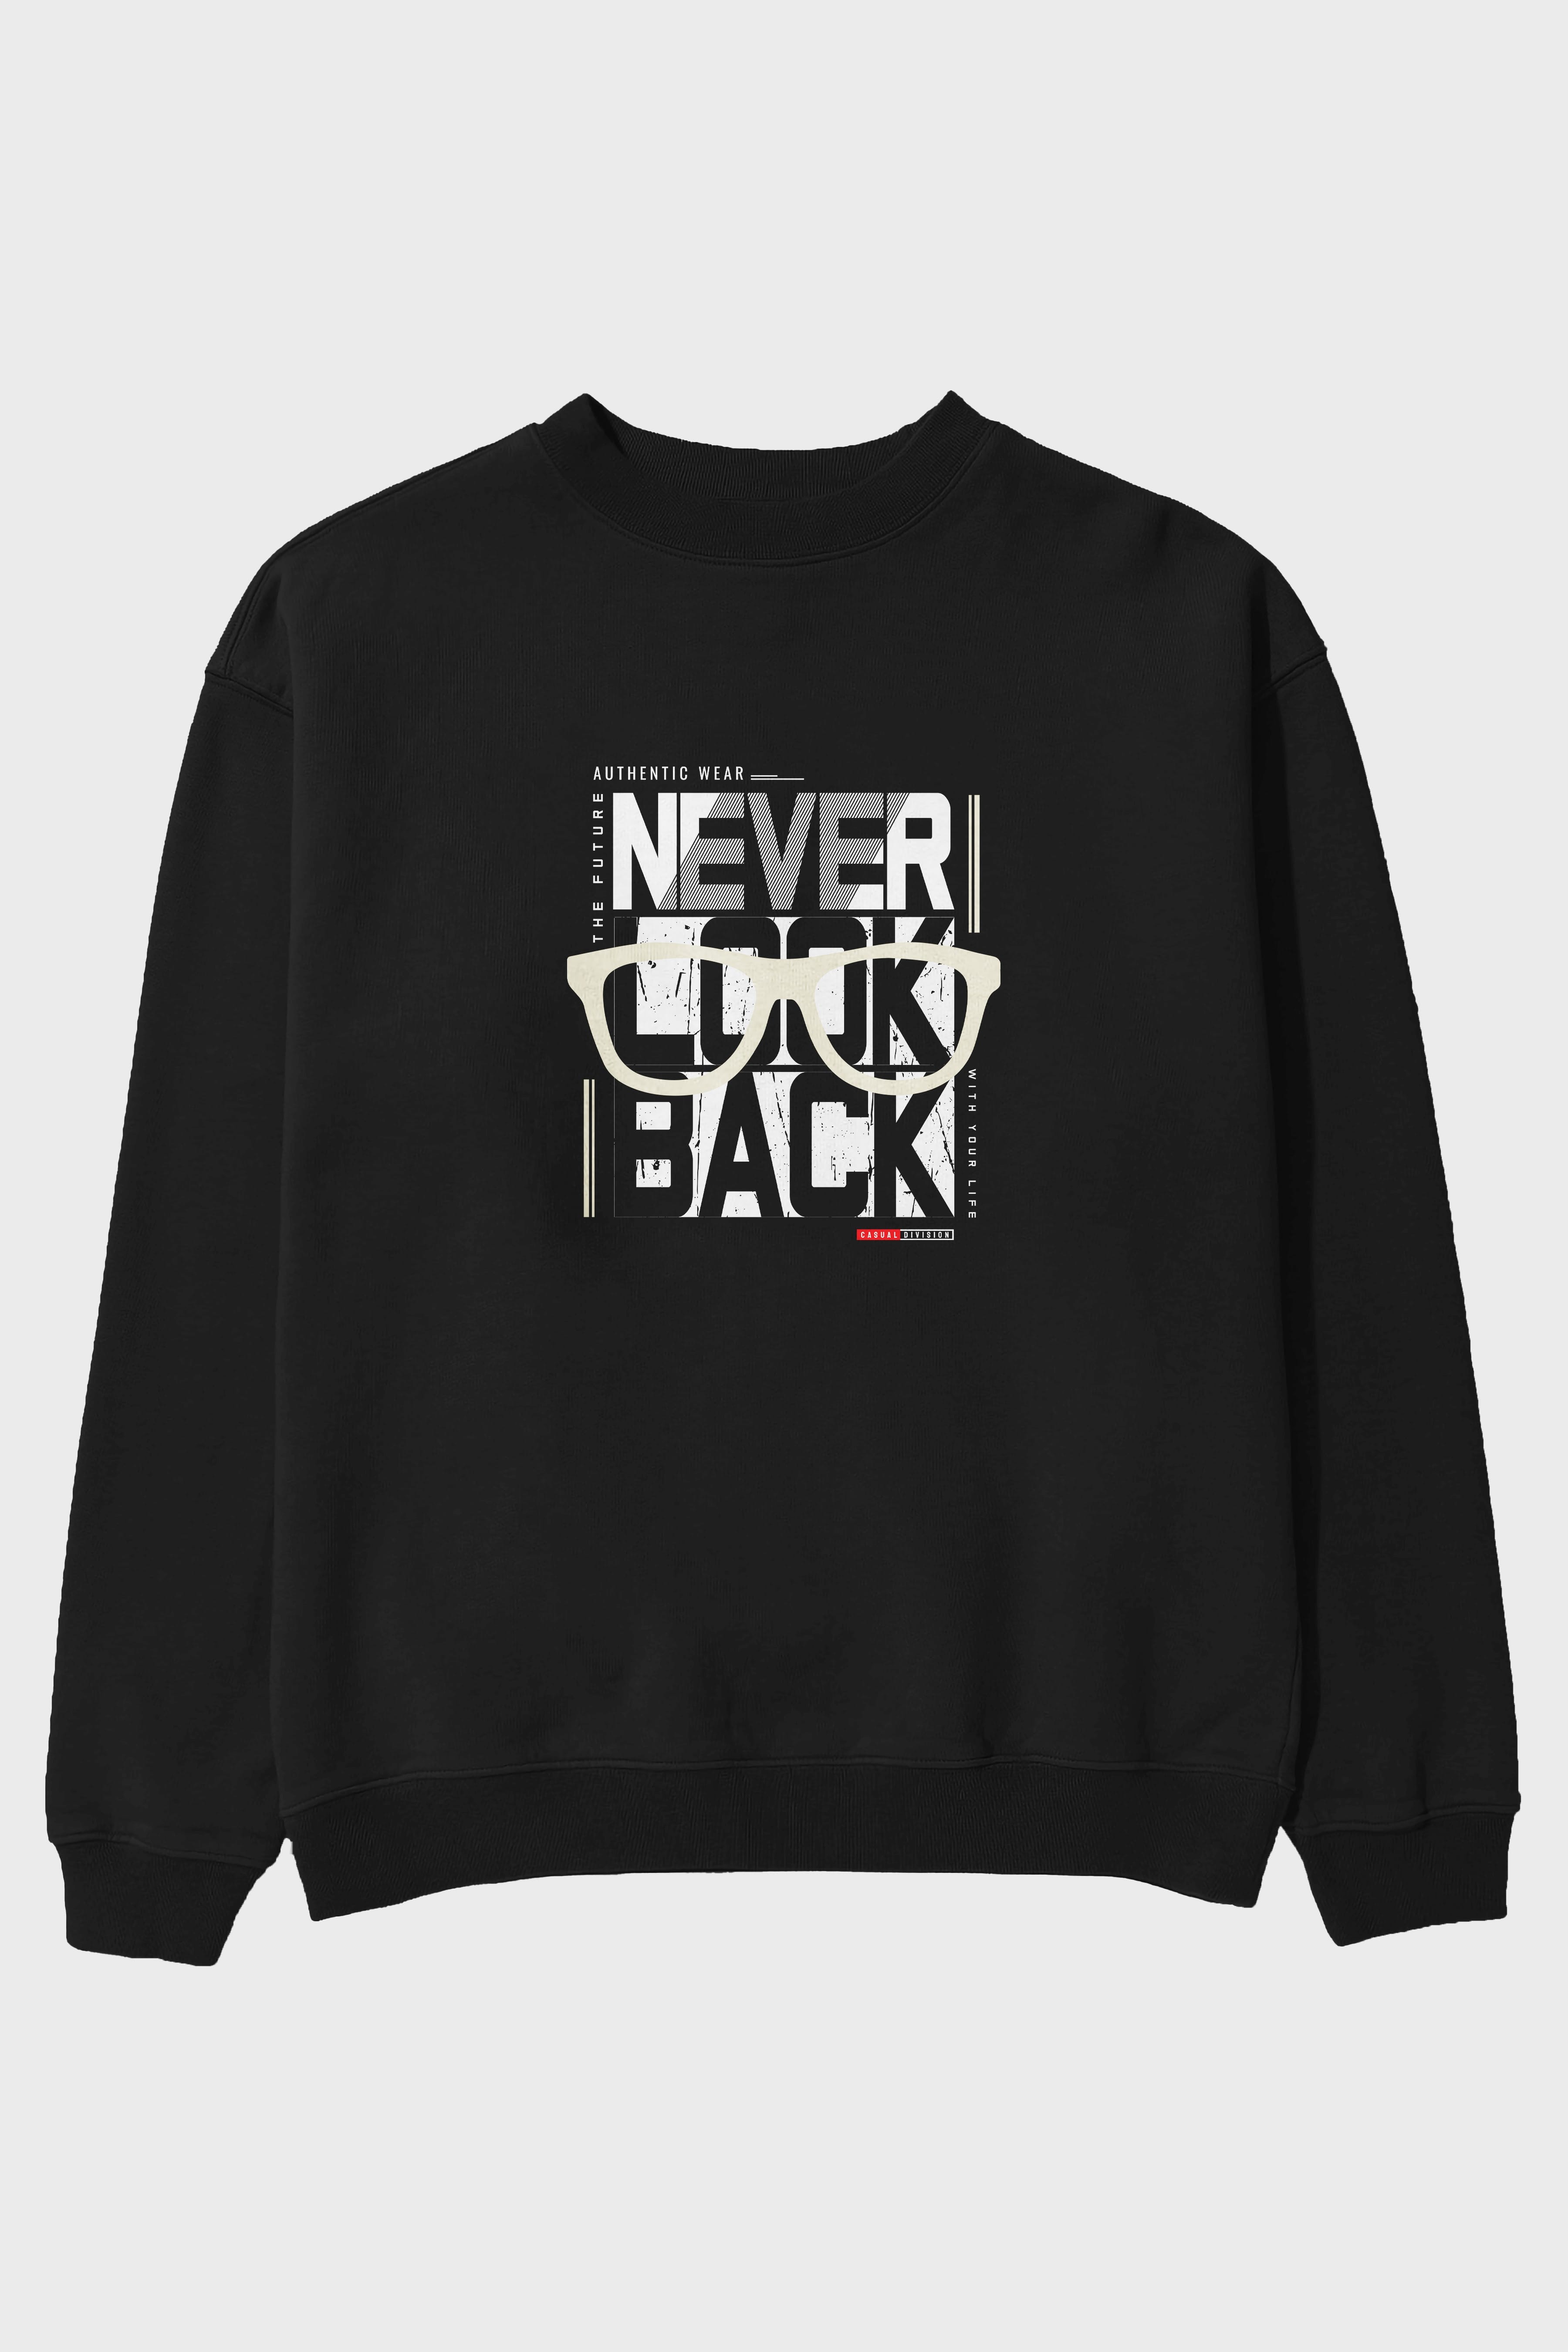 Never Look Back Ön Baskılı Oversize Sweatshirt Erkek Kadın Unisex